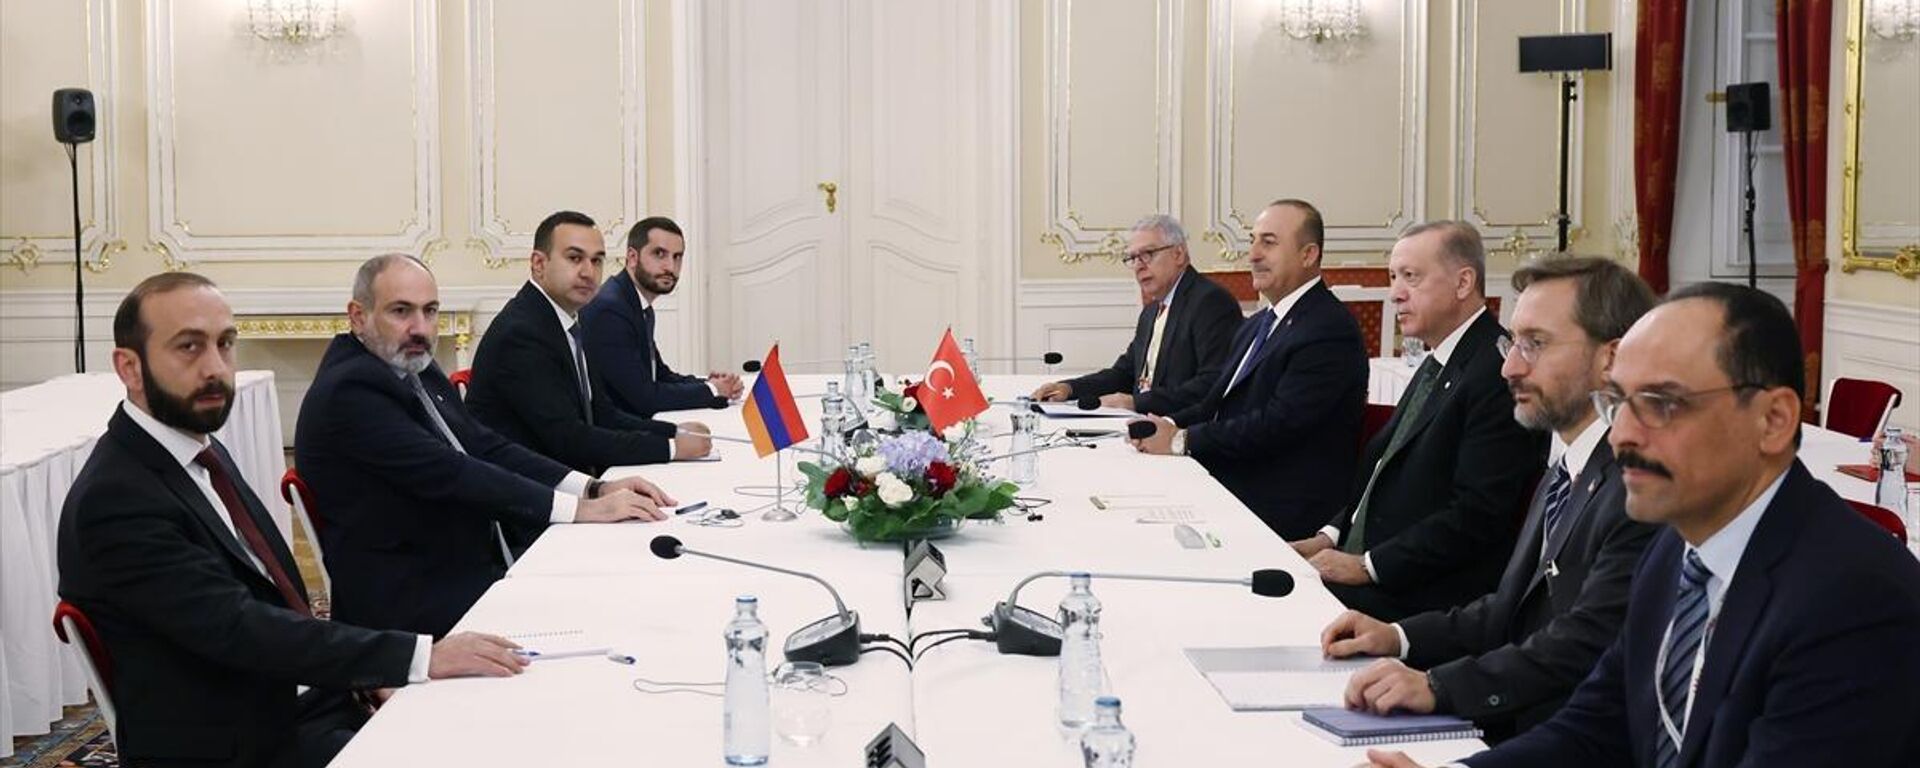 Cumhurbaşkanı Erdoğan, Avrupa Siyasi Topluluğu toplantısı için bulunduğu Prag'da Ermenistan Başbakanı Paşinyan ile bir araya geldi. - Sputnik Türkiye, 1920, 06.10.2022